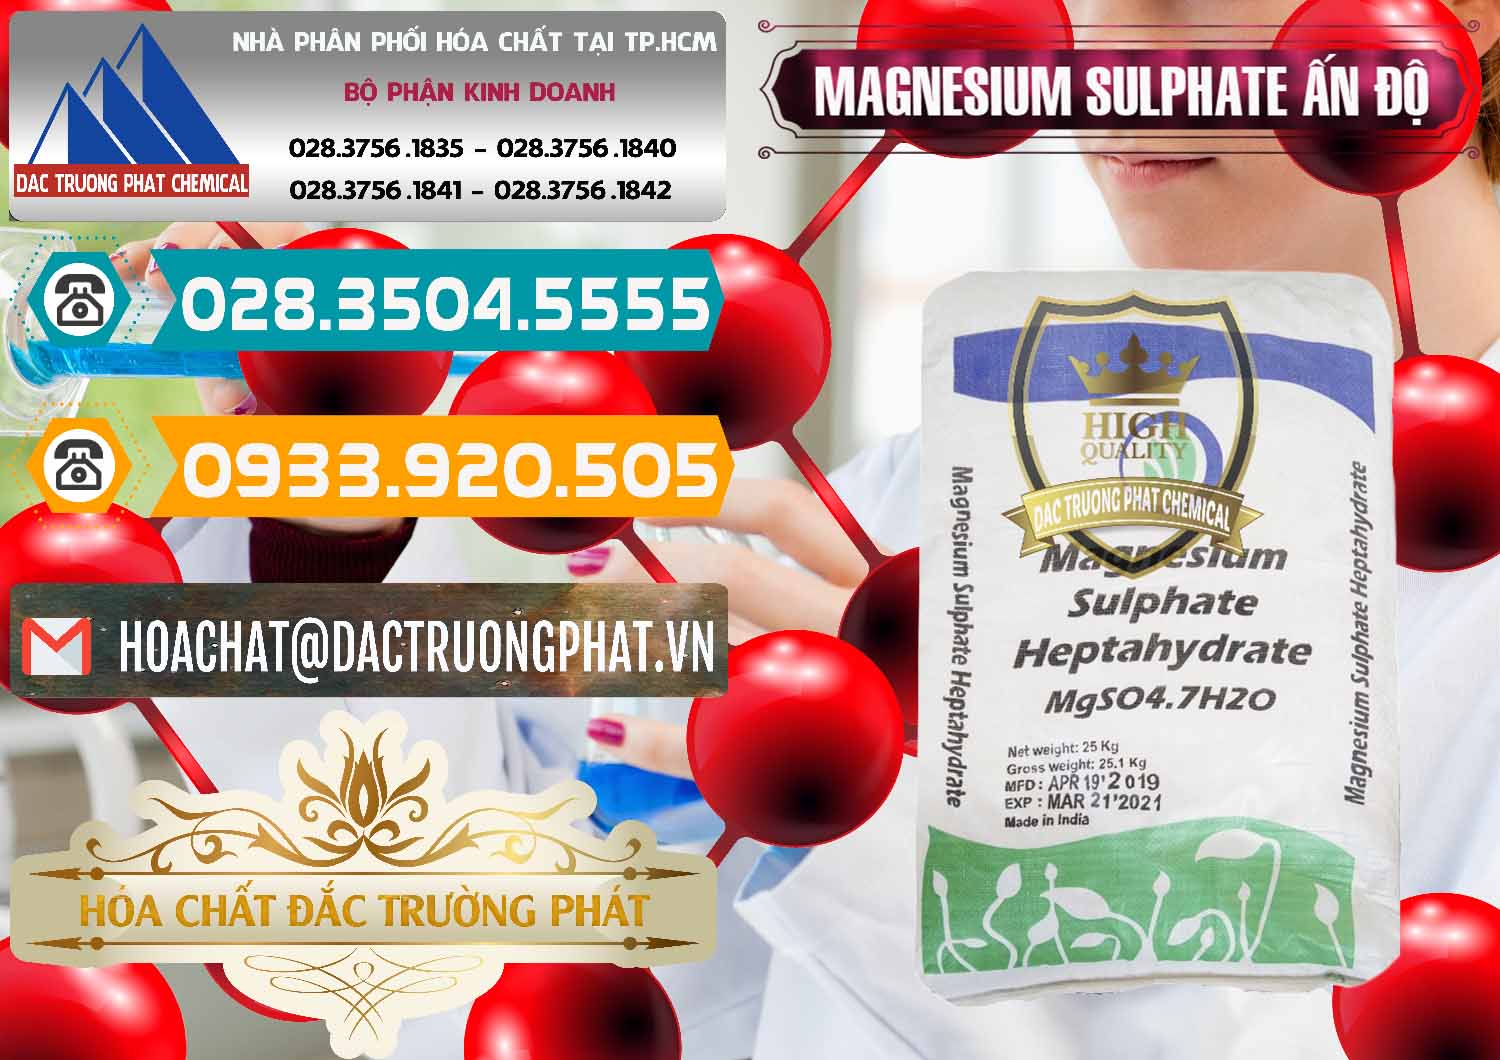 Đơn vị chuyên cung ứng _ bán MGSO4.7H2O – Magnesium Sulphate Heptahydrate Ấn Độ India - 0362 - Cty cung cấp - kinh doanh hóa chất tại TP.HCM - congtyhoachat.vn